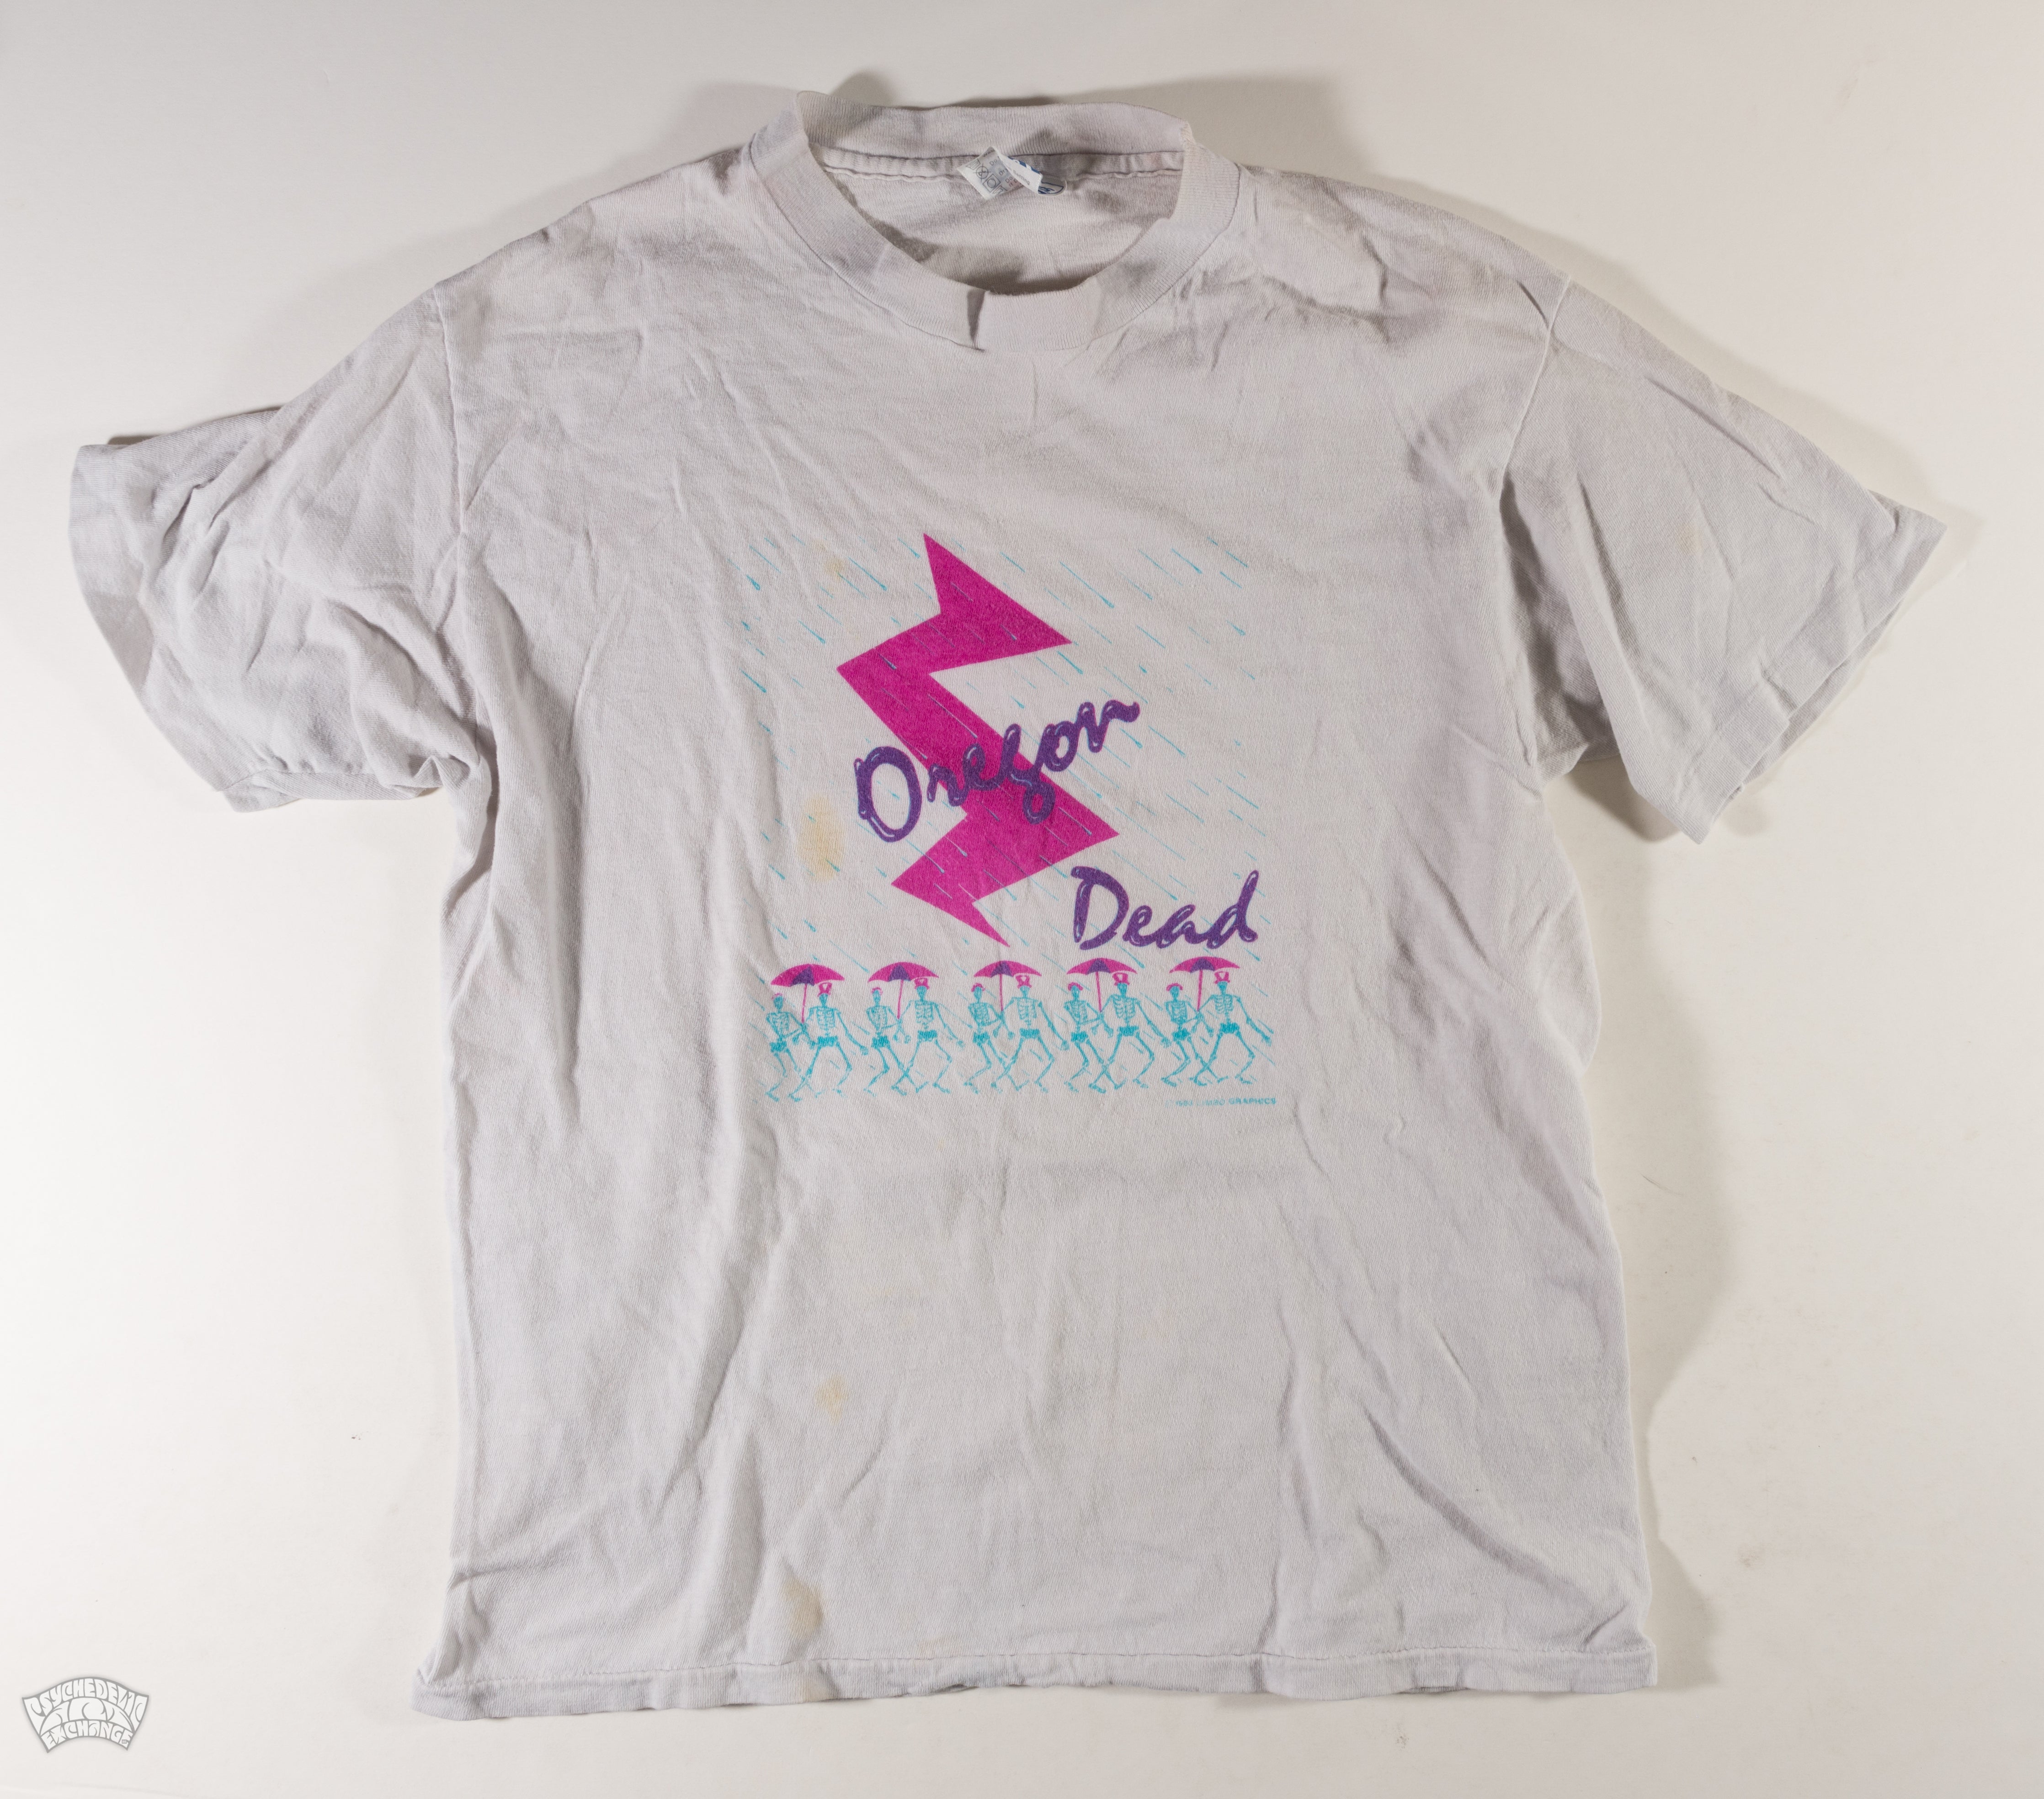 1983- Grateful Dead Oregon Dead - Fan Art -Vintage T-Shirt